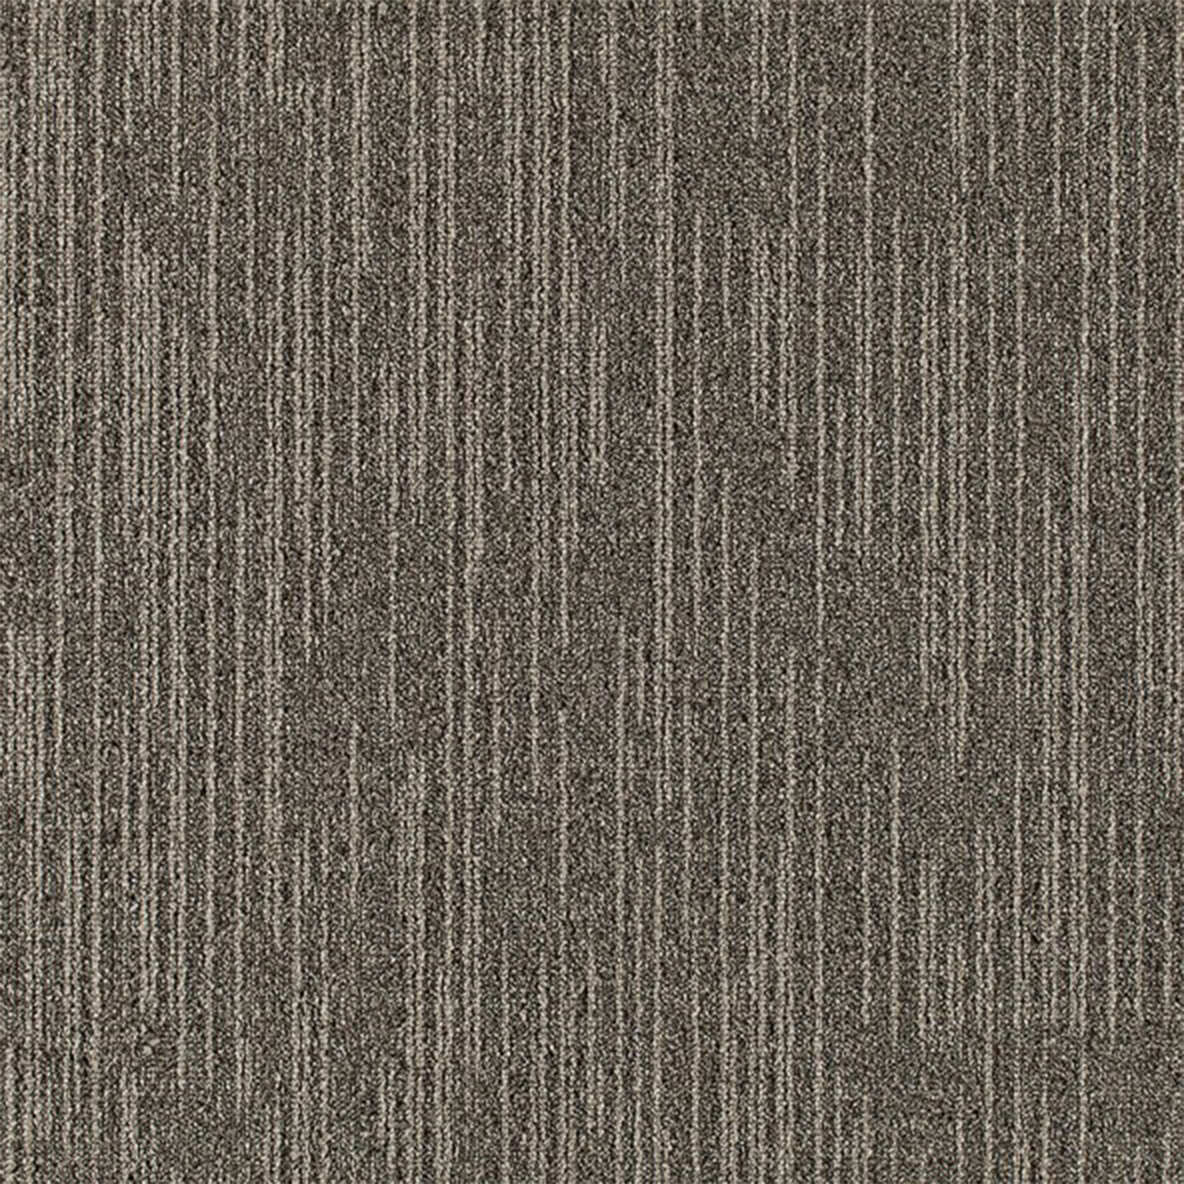 Overdirve Commercial Carpet Tile .30 Inch x 50x50 cm per Tile Fossil color close up